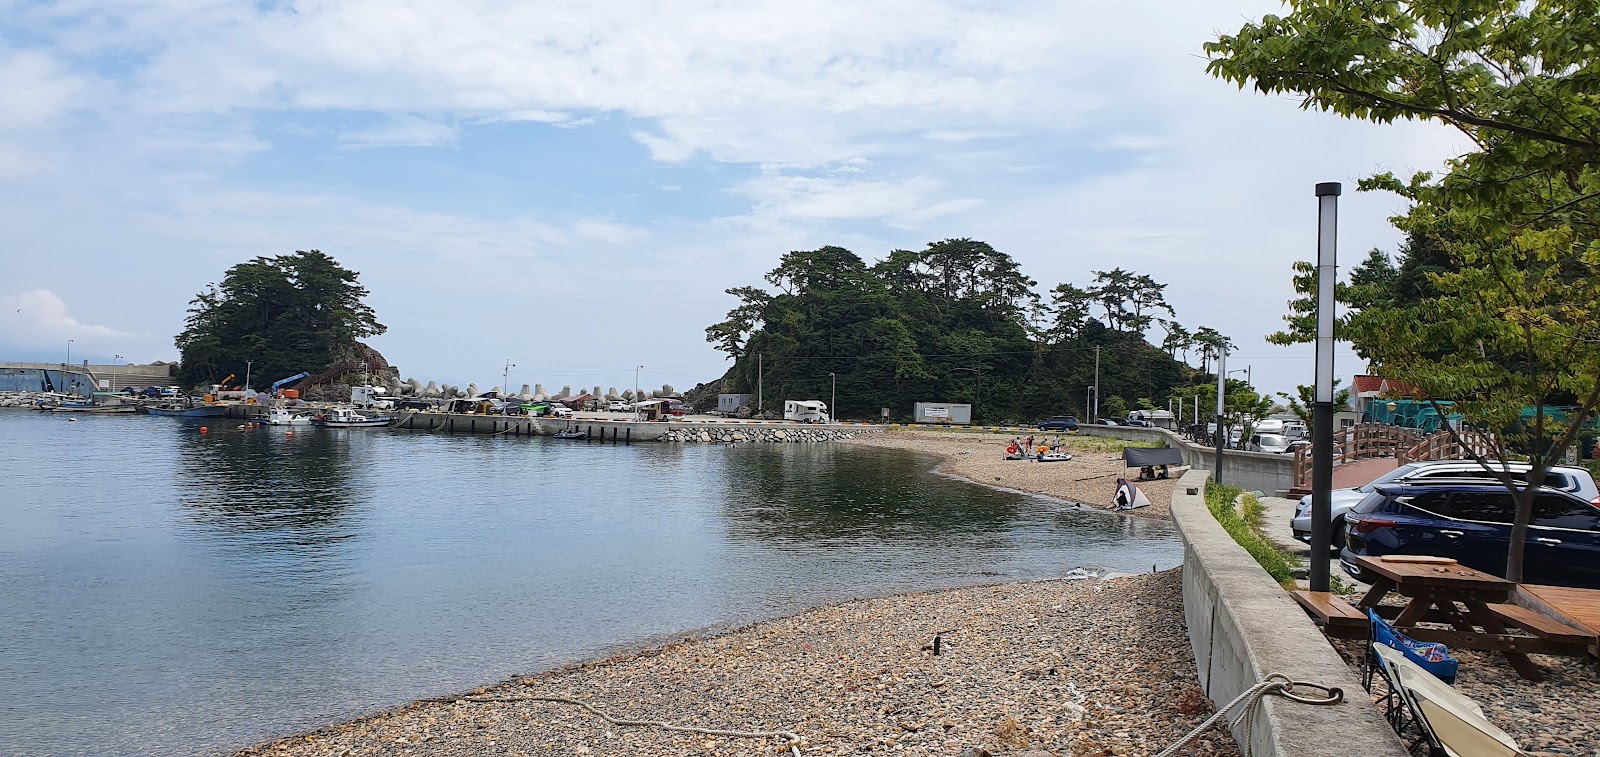 Fotografie cu Hando Beach - locul popular printre cunoscătorii de relaxare